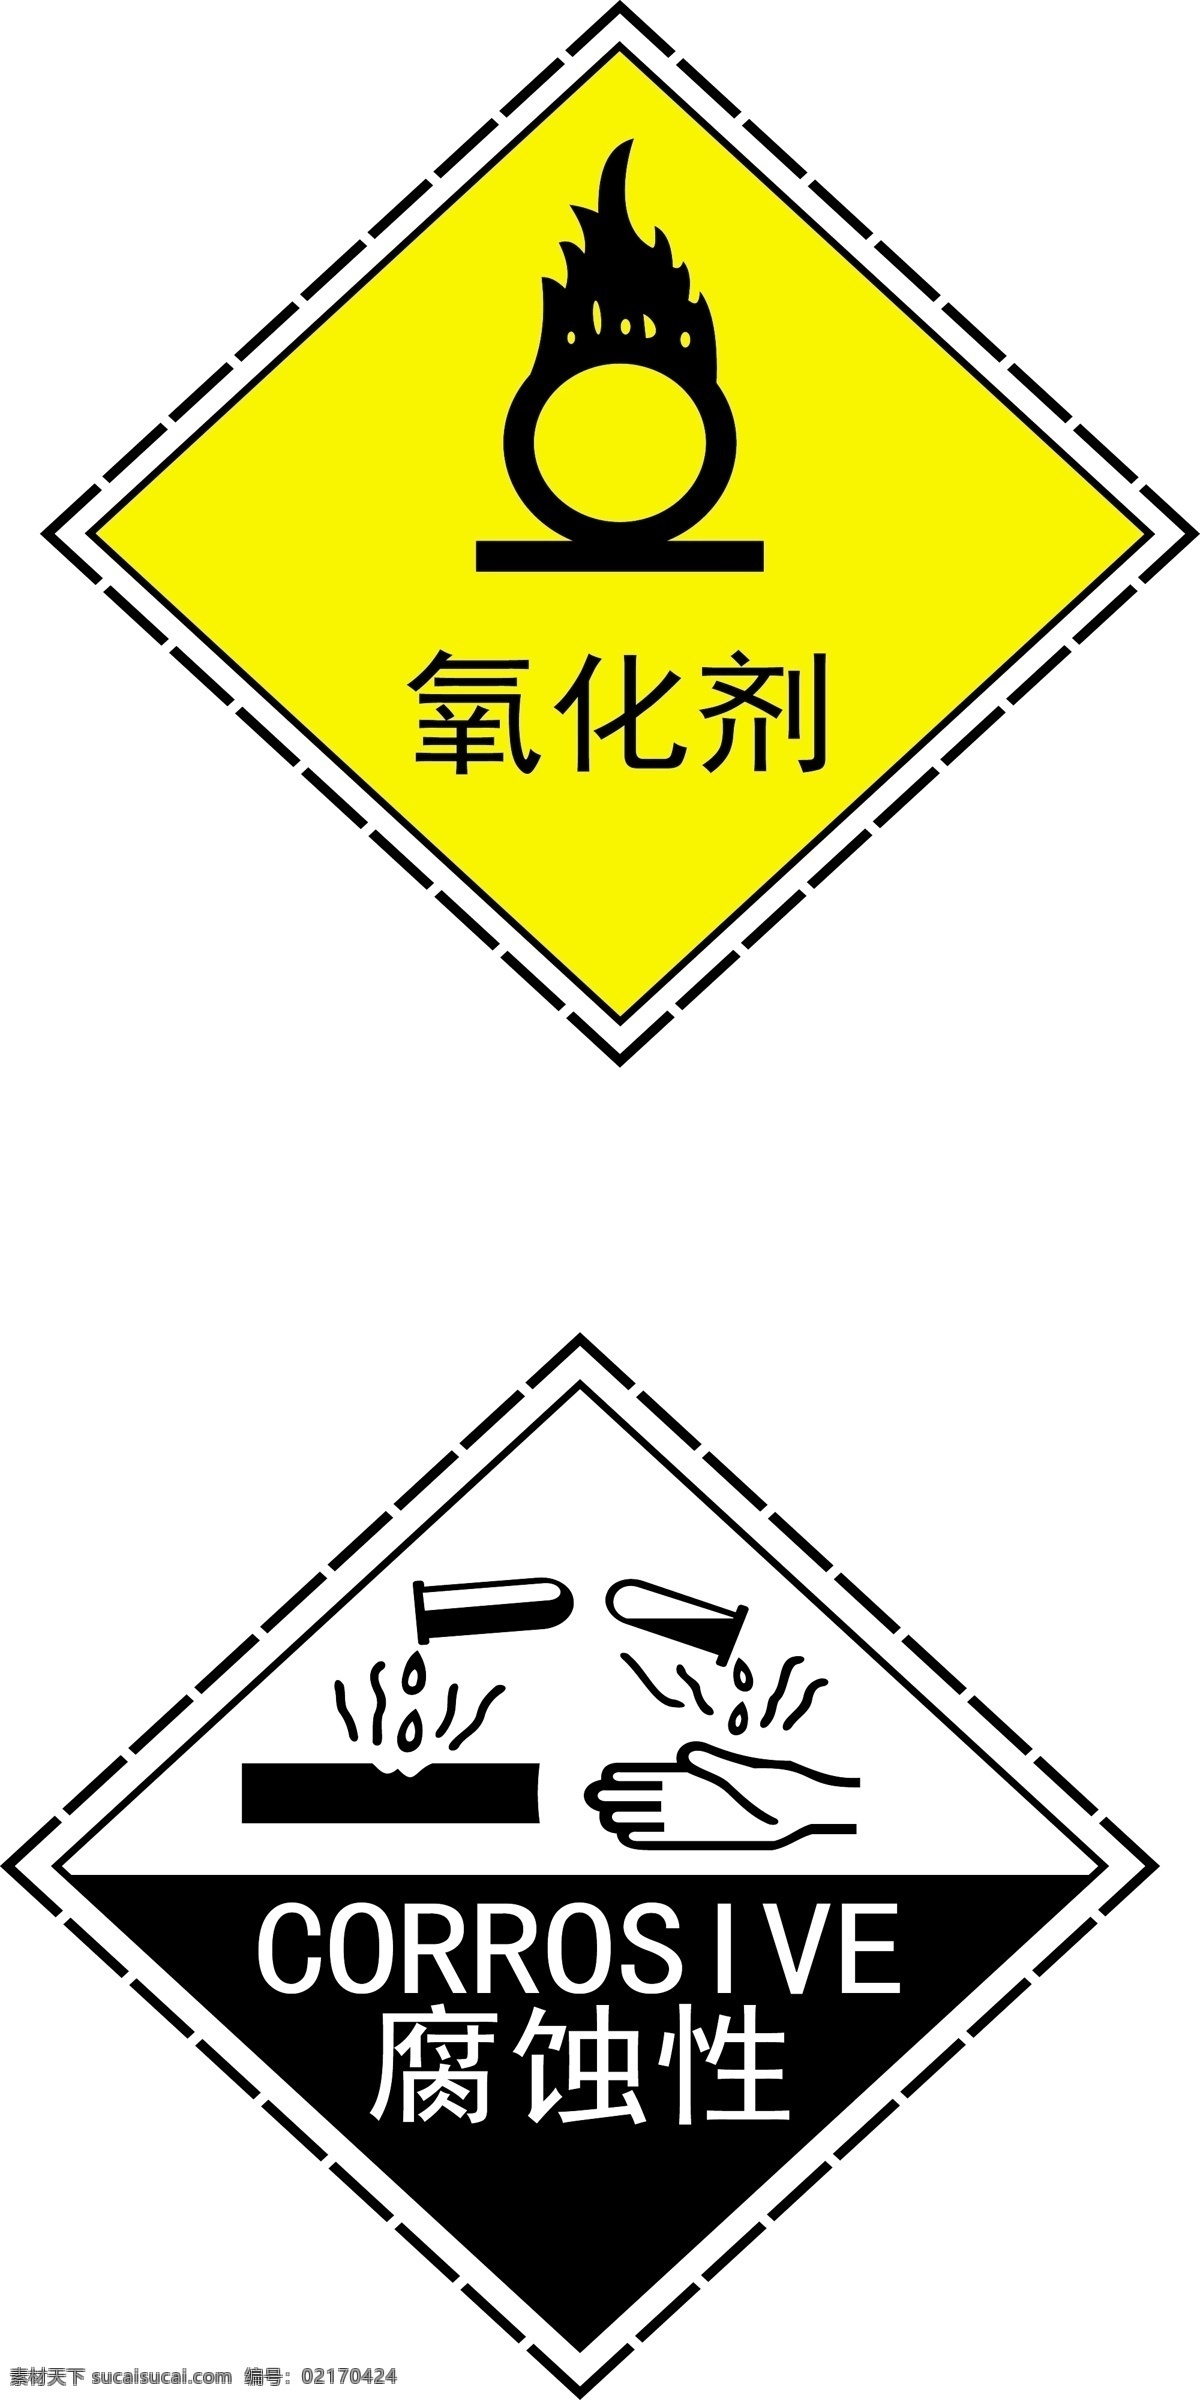 氧化剂 助燃 腐蚀性标志 危险标志 氧化剂标识 助燃标识 腐蚀性标识